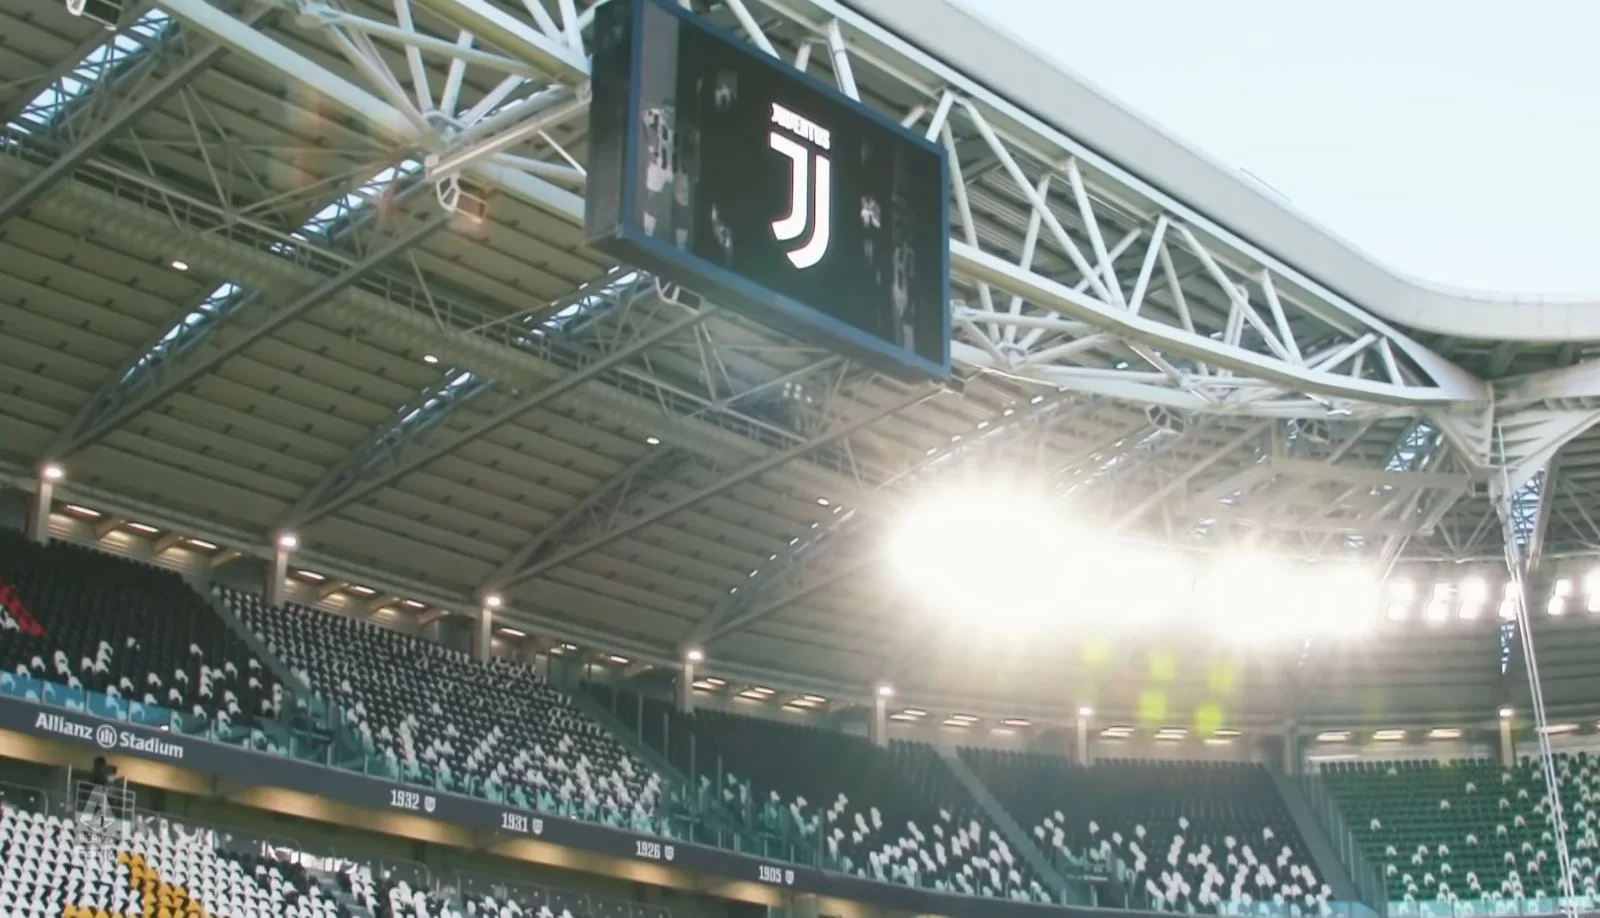 Juve-Napoli, parla Galliani: “Importante applicare le norme Uefa, altrimenti crolla tutto”